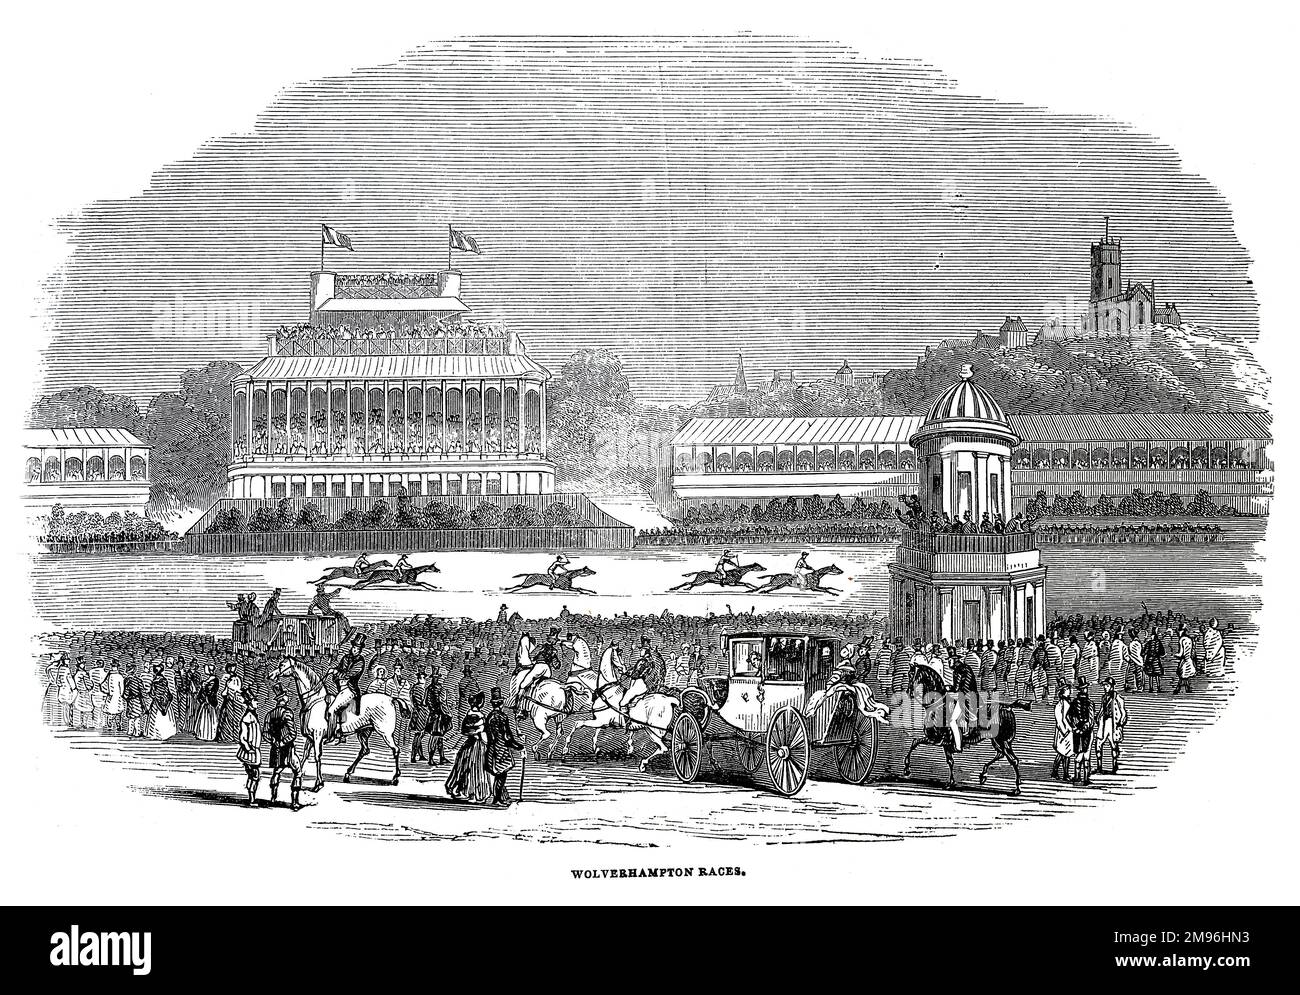 Carreras de Wolverhampton; Ilustración en blanco y negro de The London Illustrated News; agosto de 1844. Foto de stock